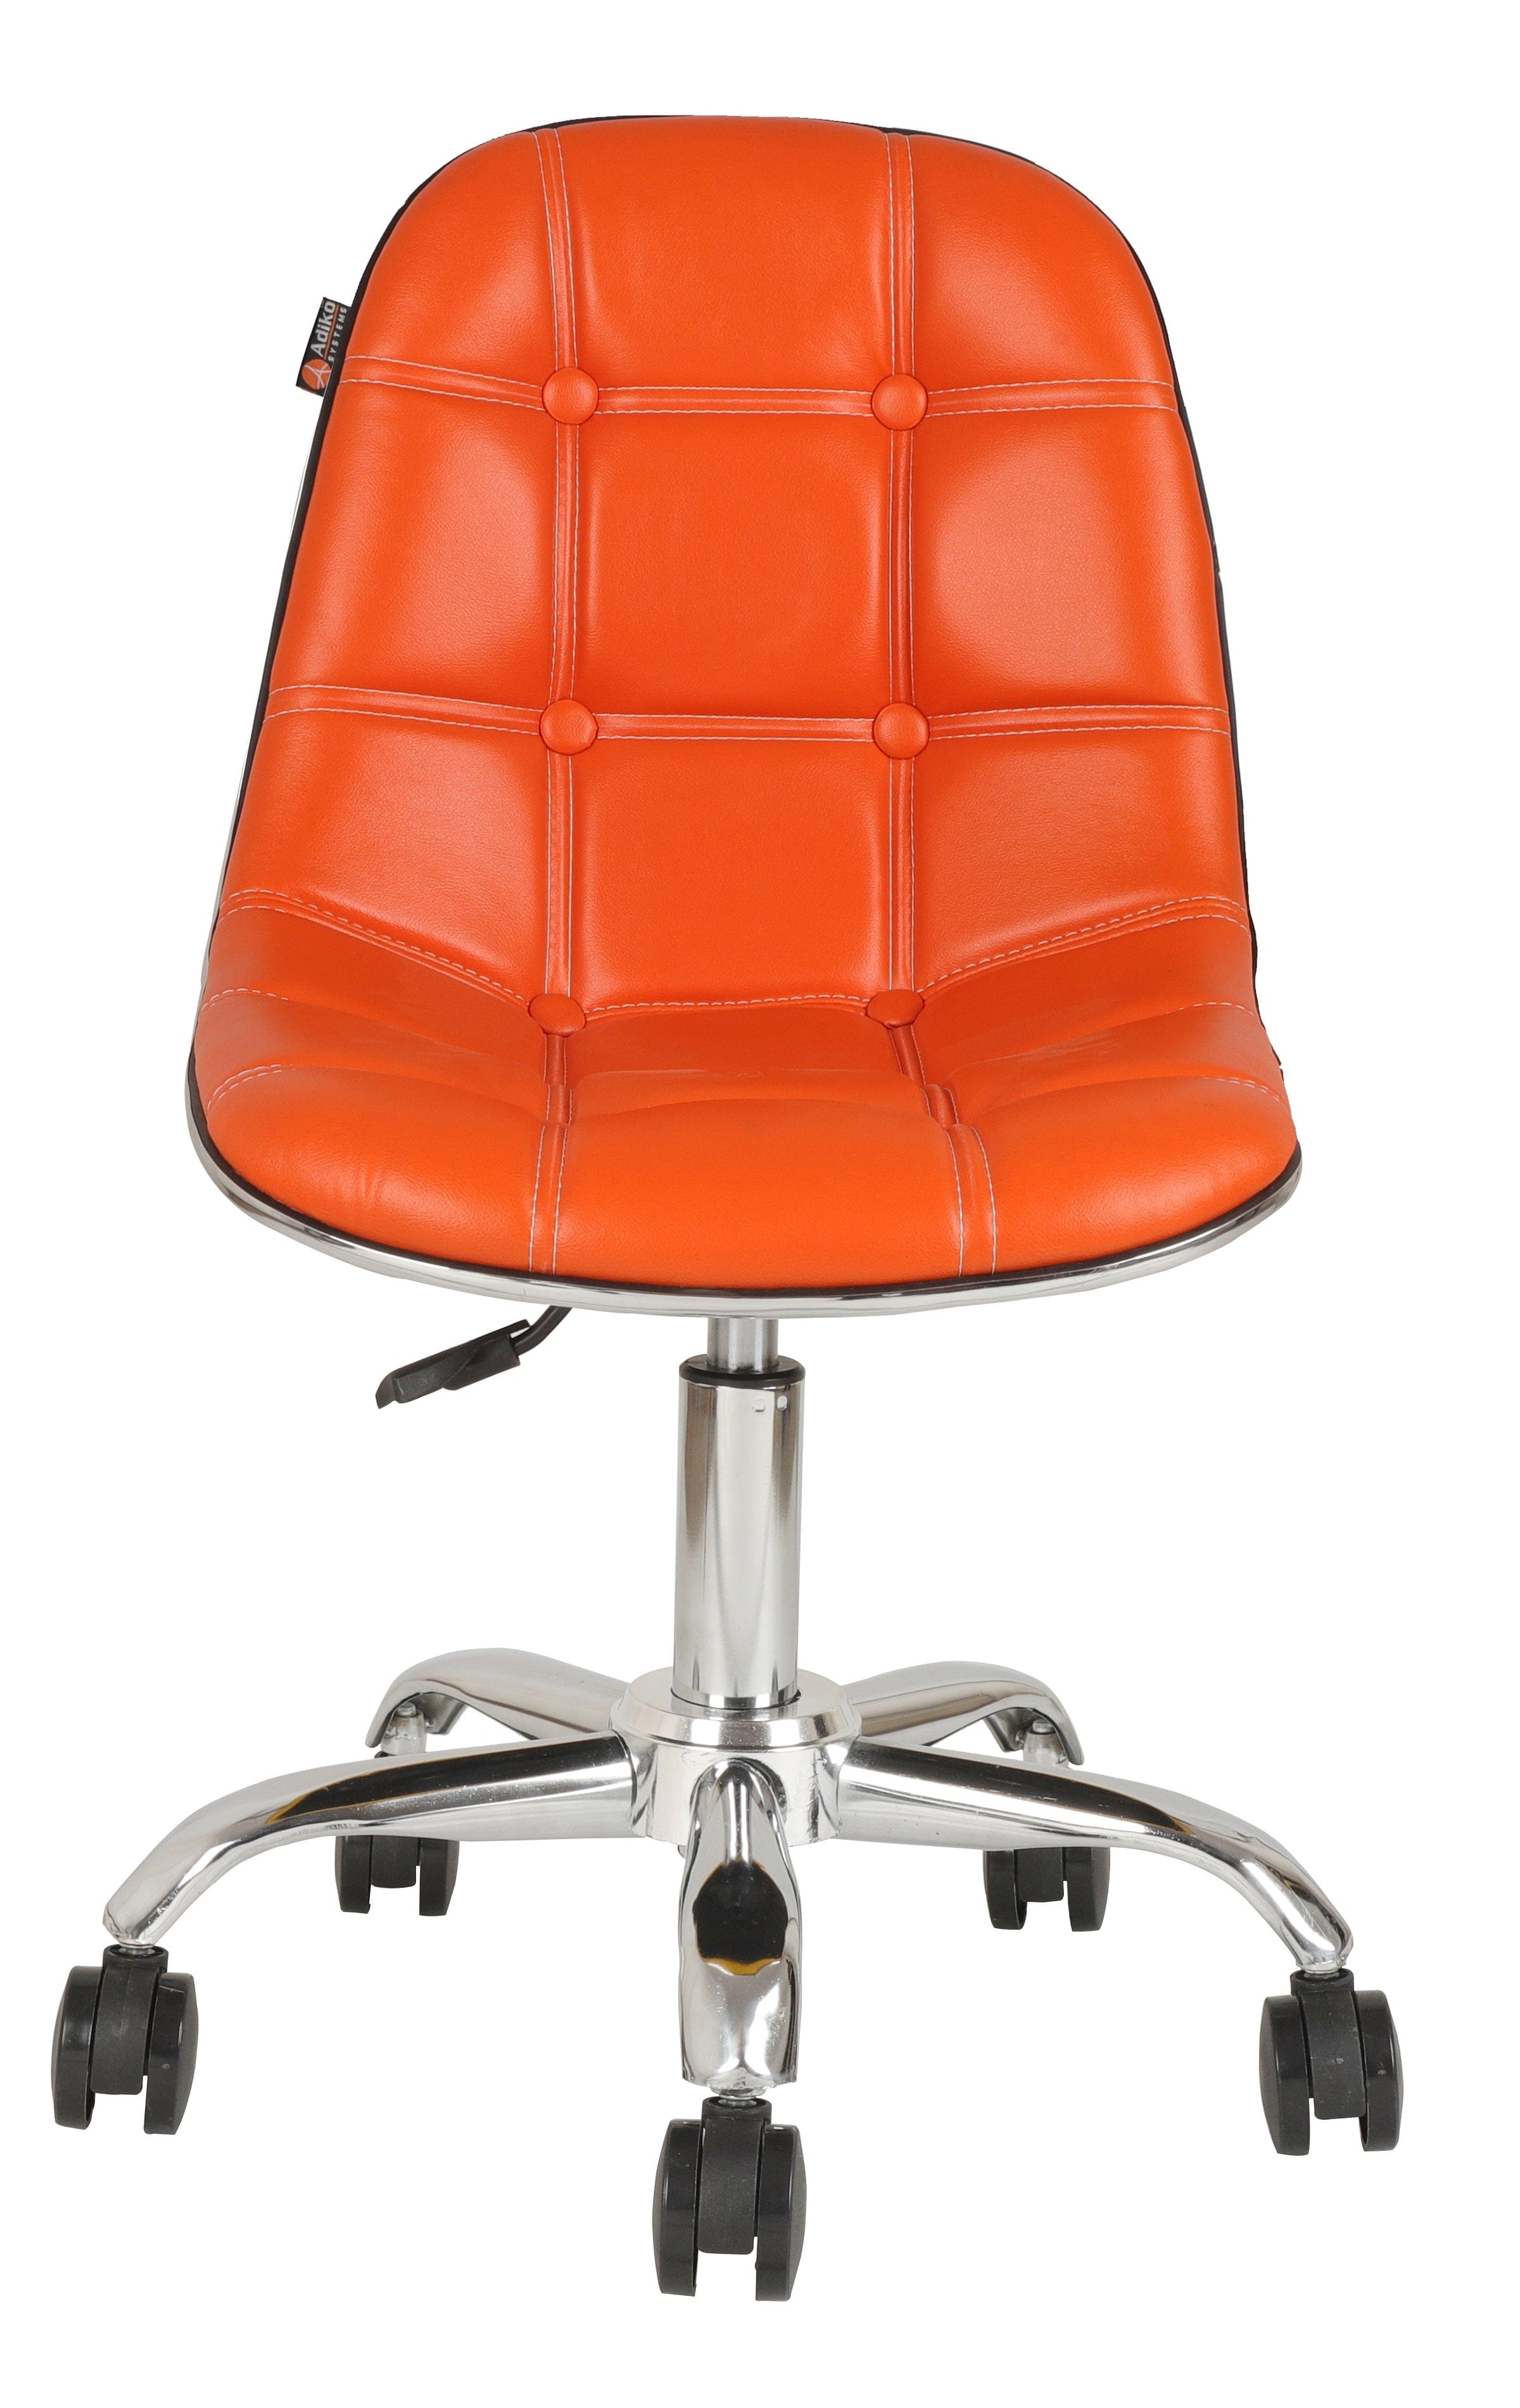 Adiko Lounge Chair in Orange